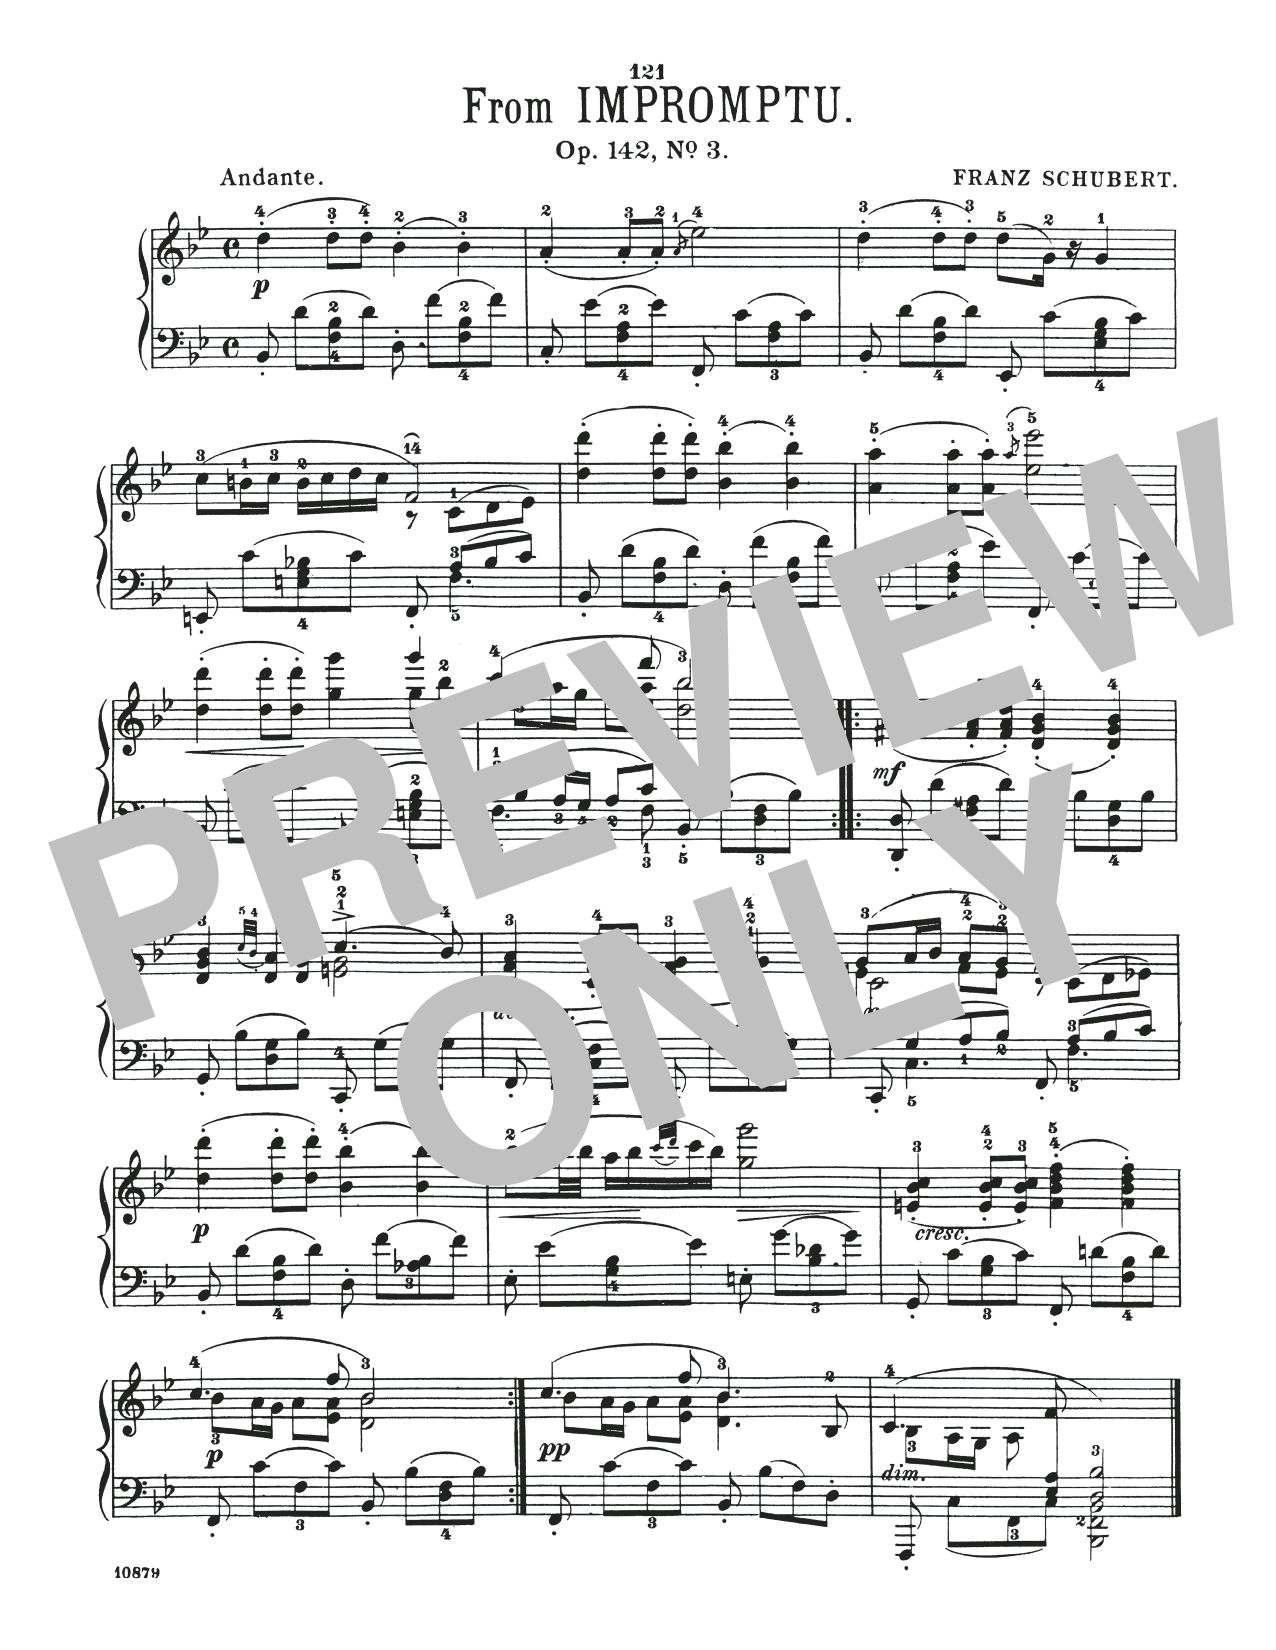 Download Franz Schubert Andante, Op. 142, No. 3 Sheet Music